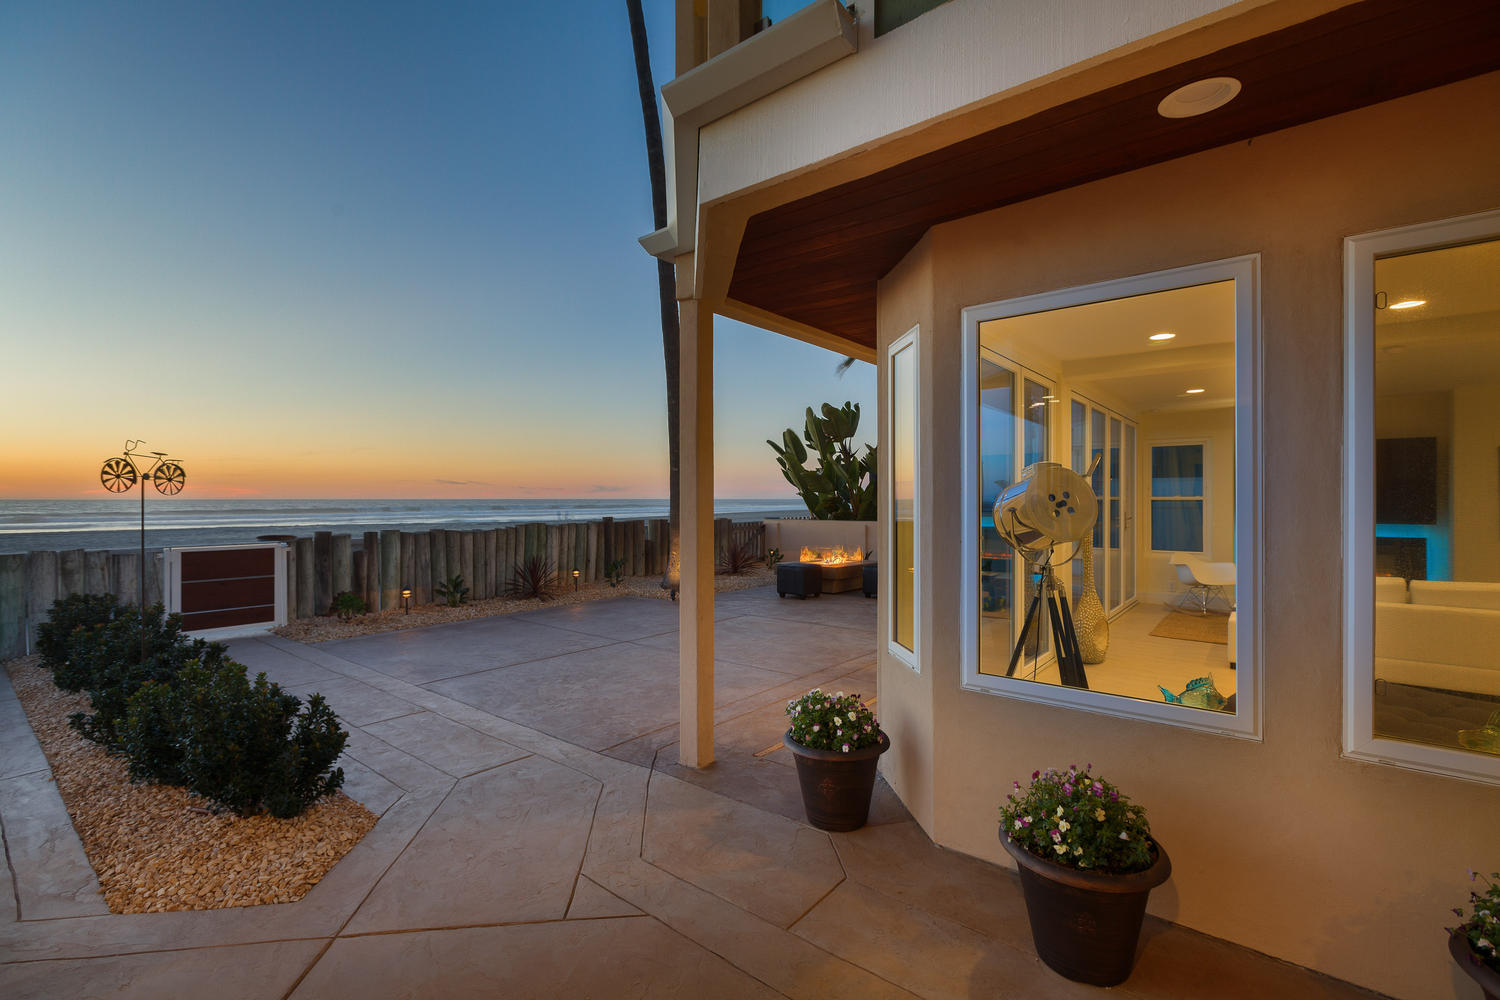 Pacific Dream Playa Patio Ocean View, Luxury Oceanfront Vacation Rental in San Diego